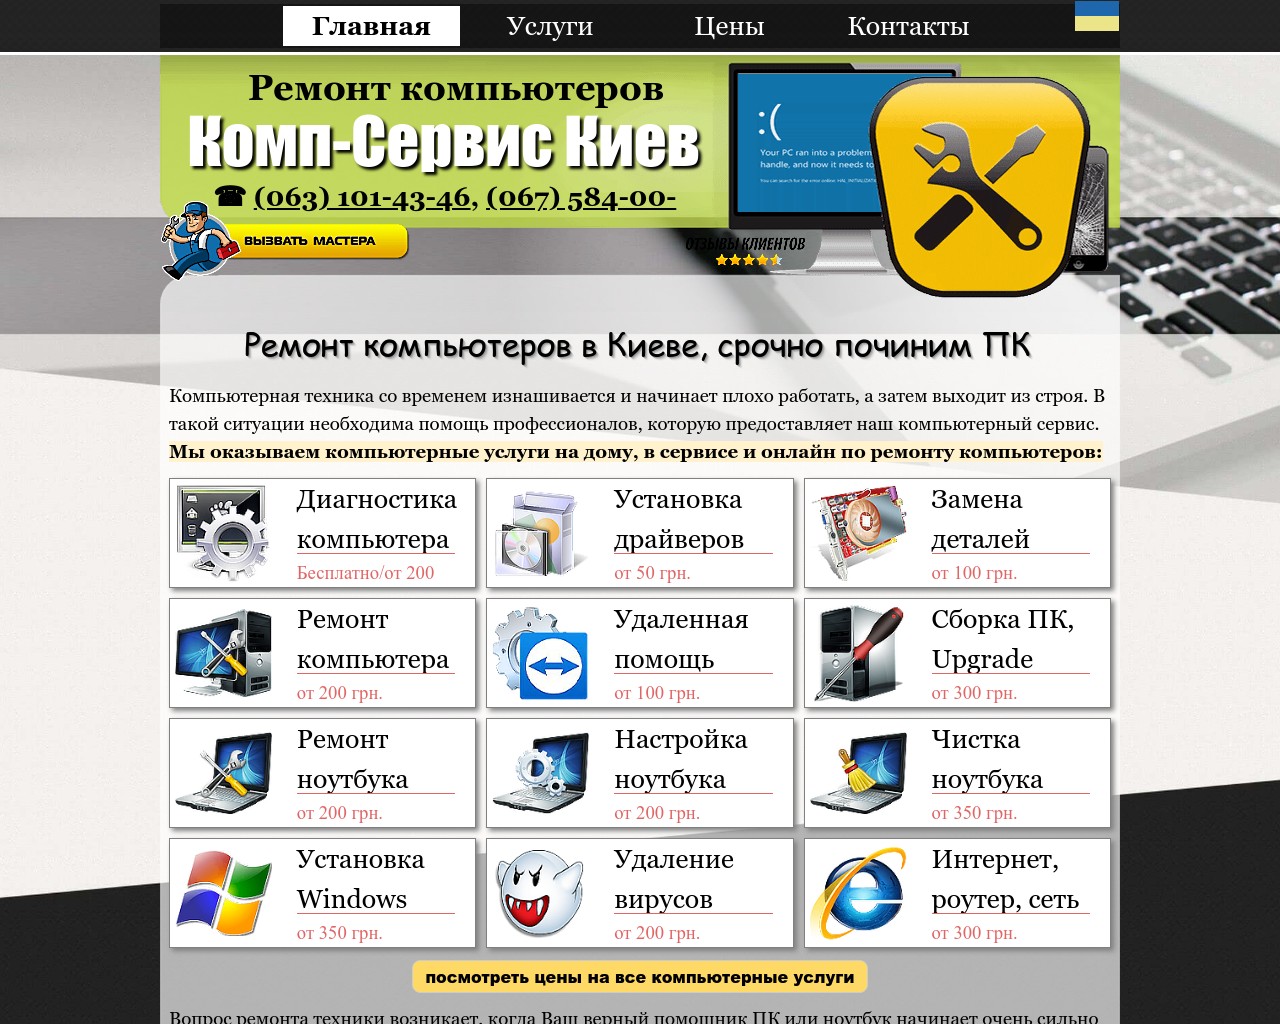 Изображение скриншота сайта - Ремонт компьютеров и ноутбуков Комп-Сервис Киев